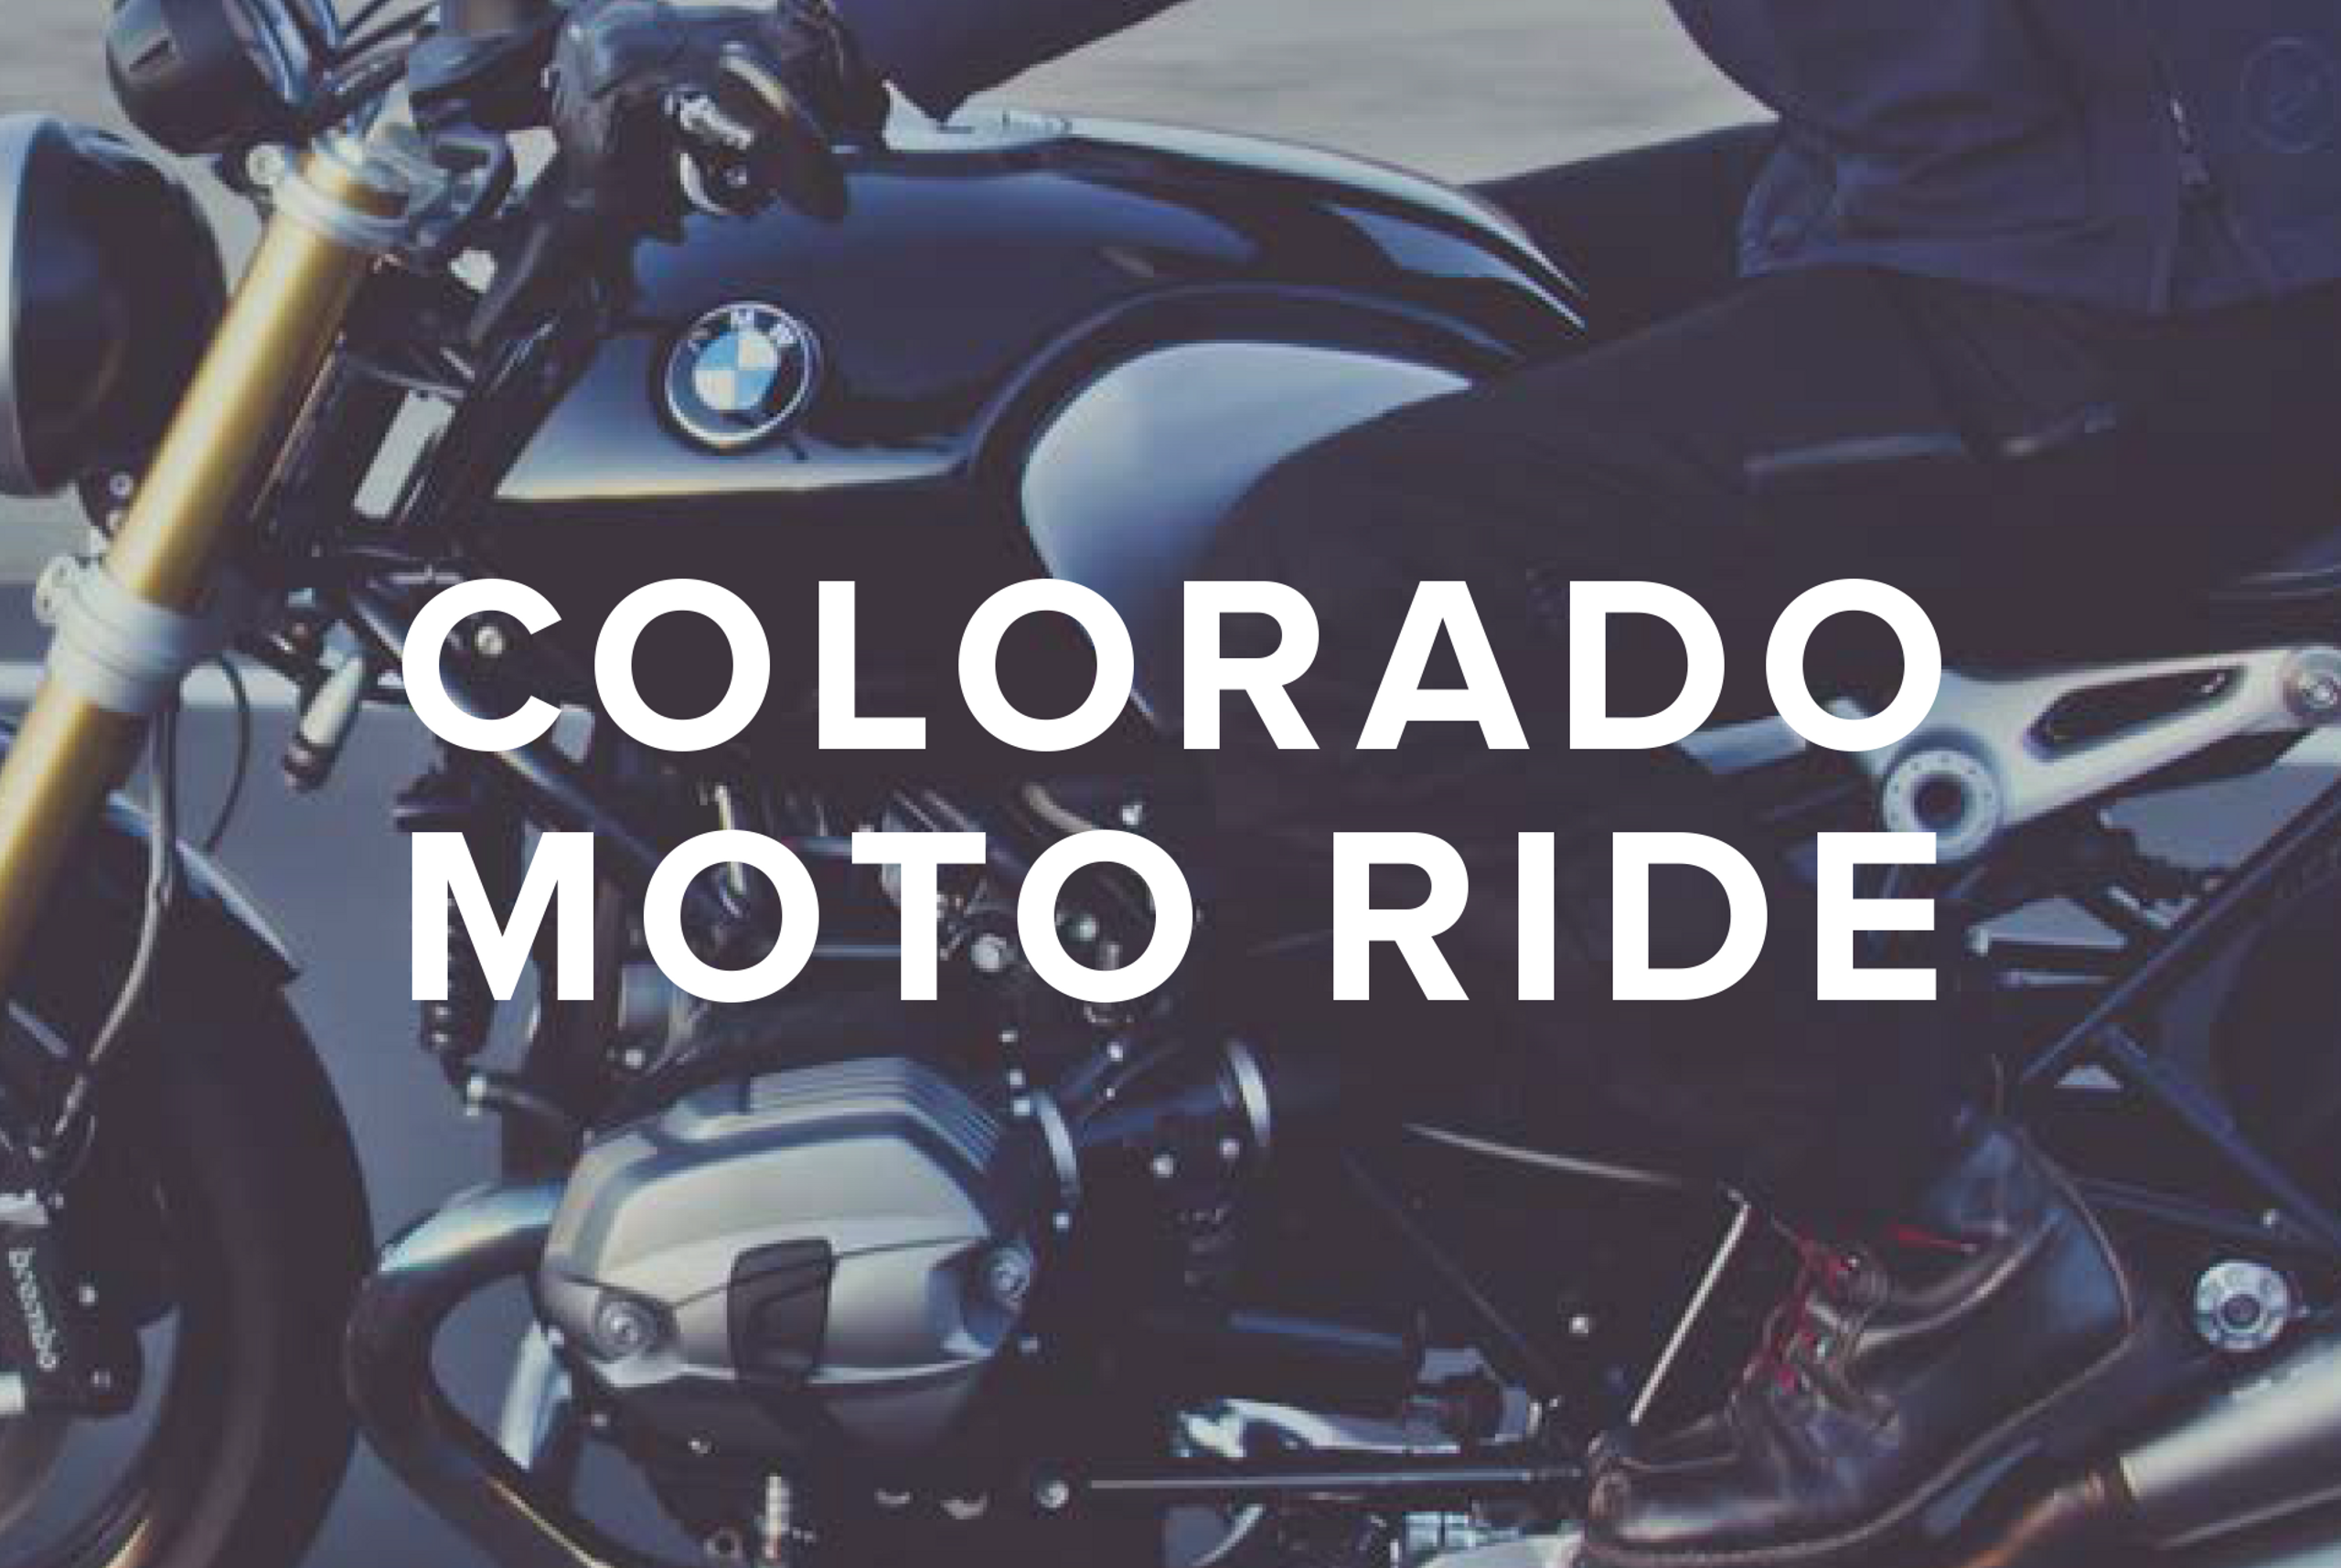 motorcycle with words "colorado moto ride"